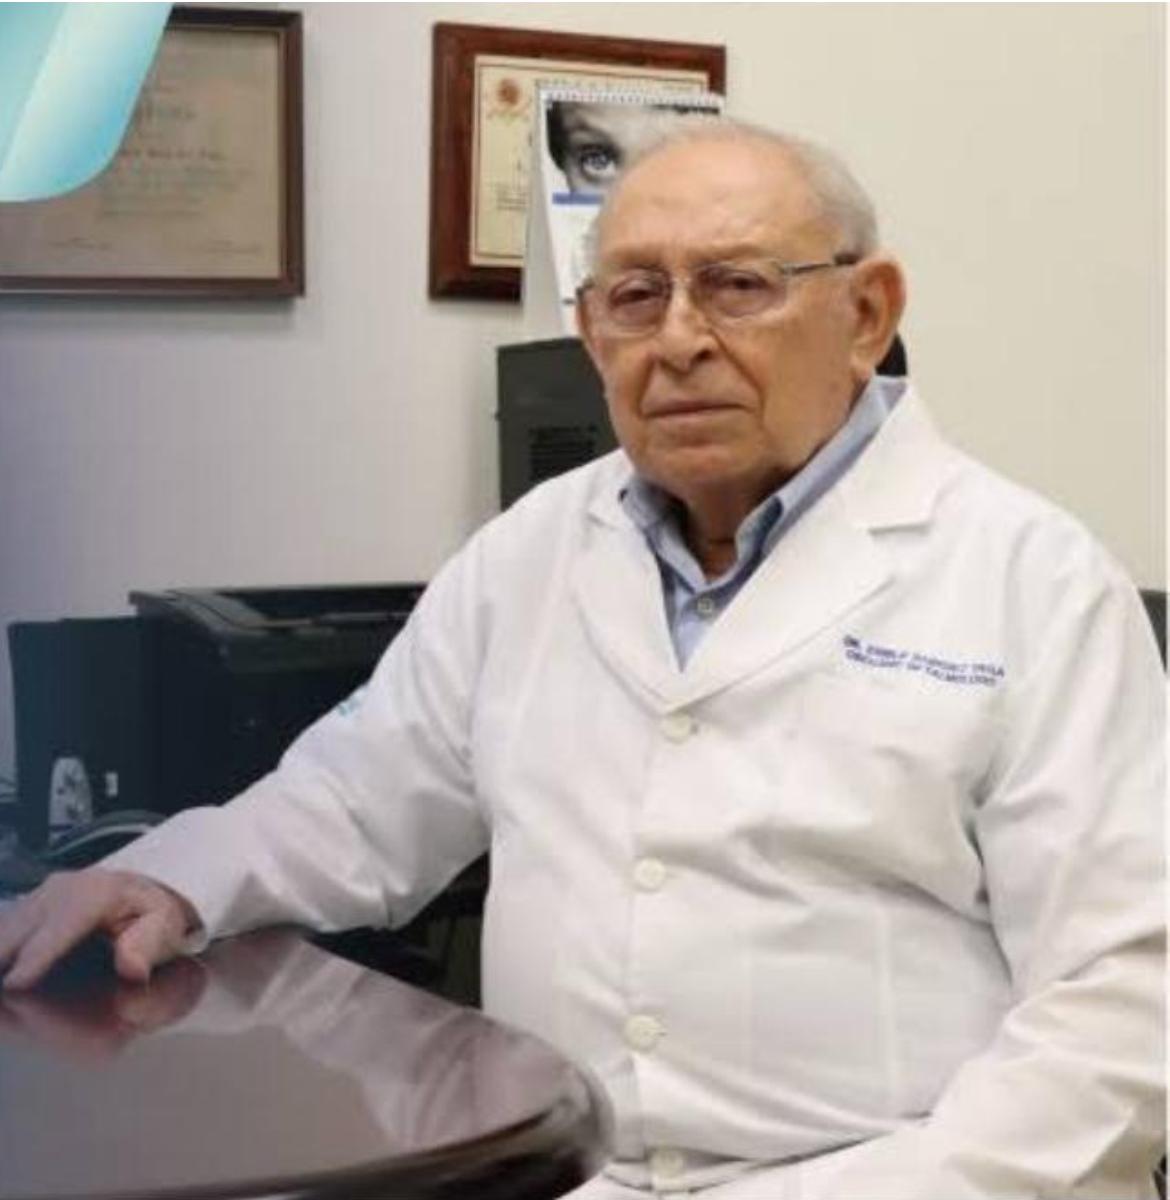 Dr. Emilio Sánchez Vega